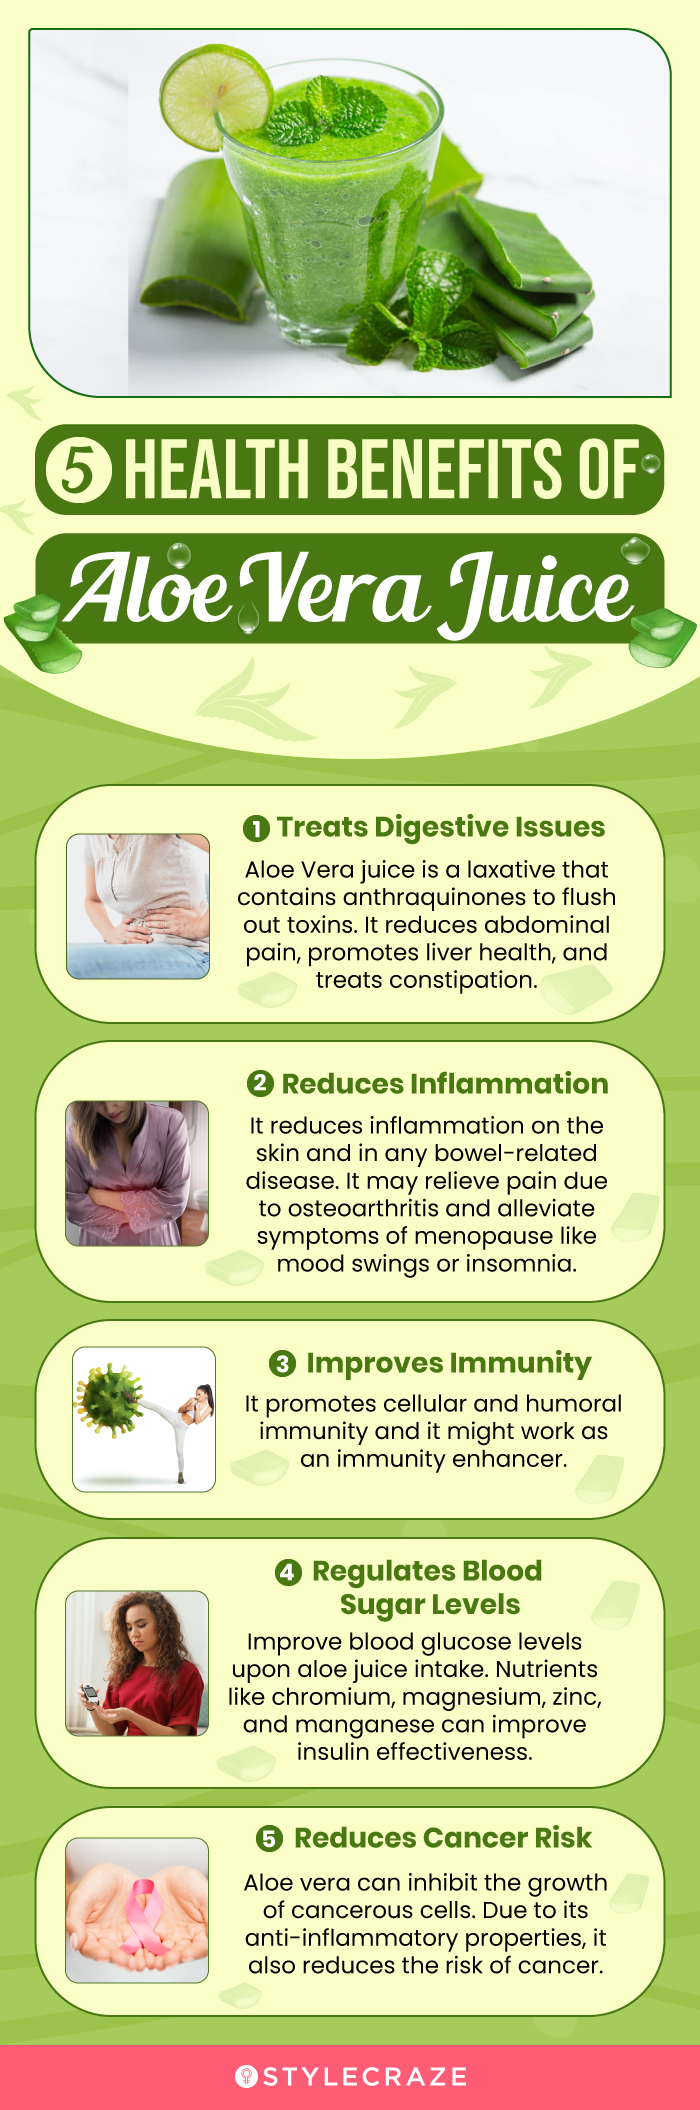 5 health benefits of aloe vera juice (infographic)